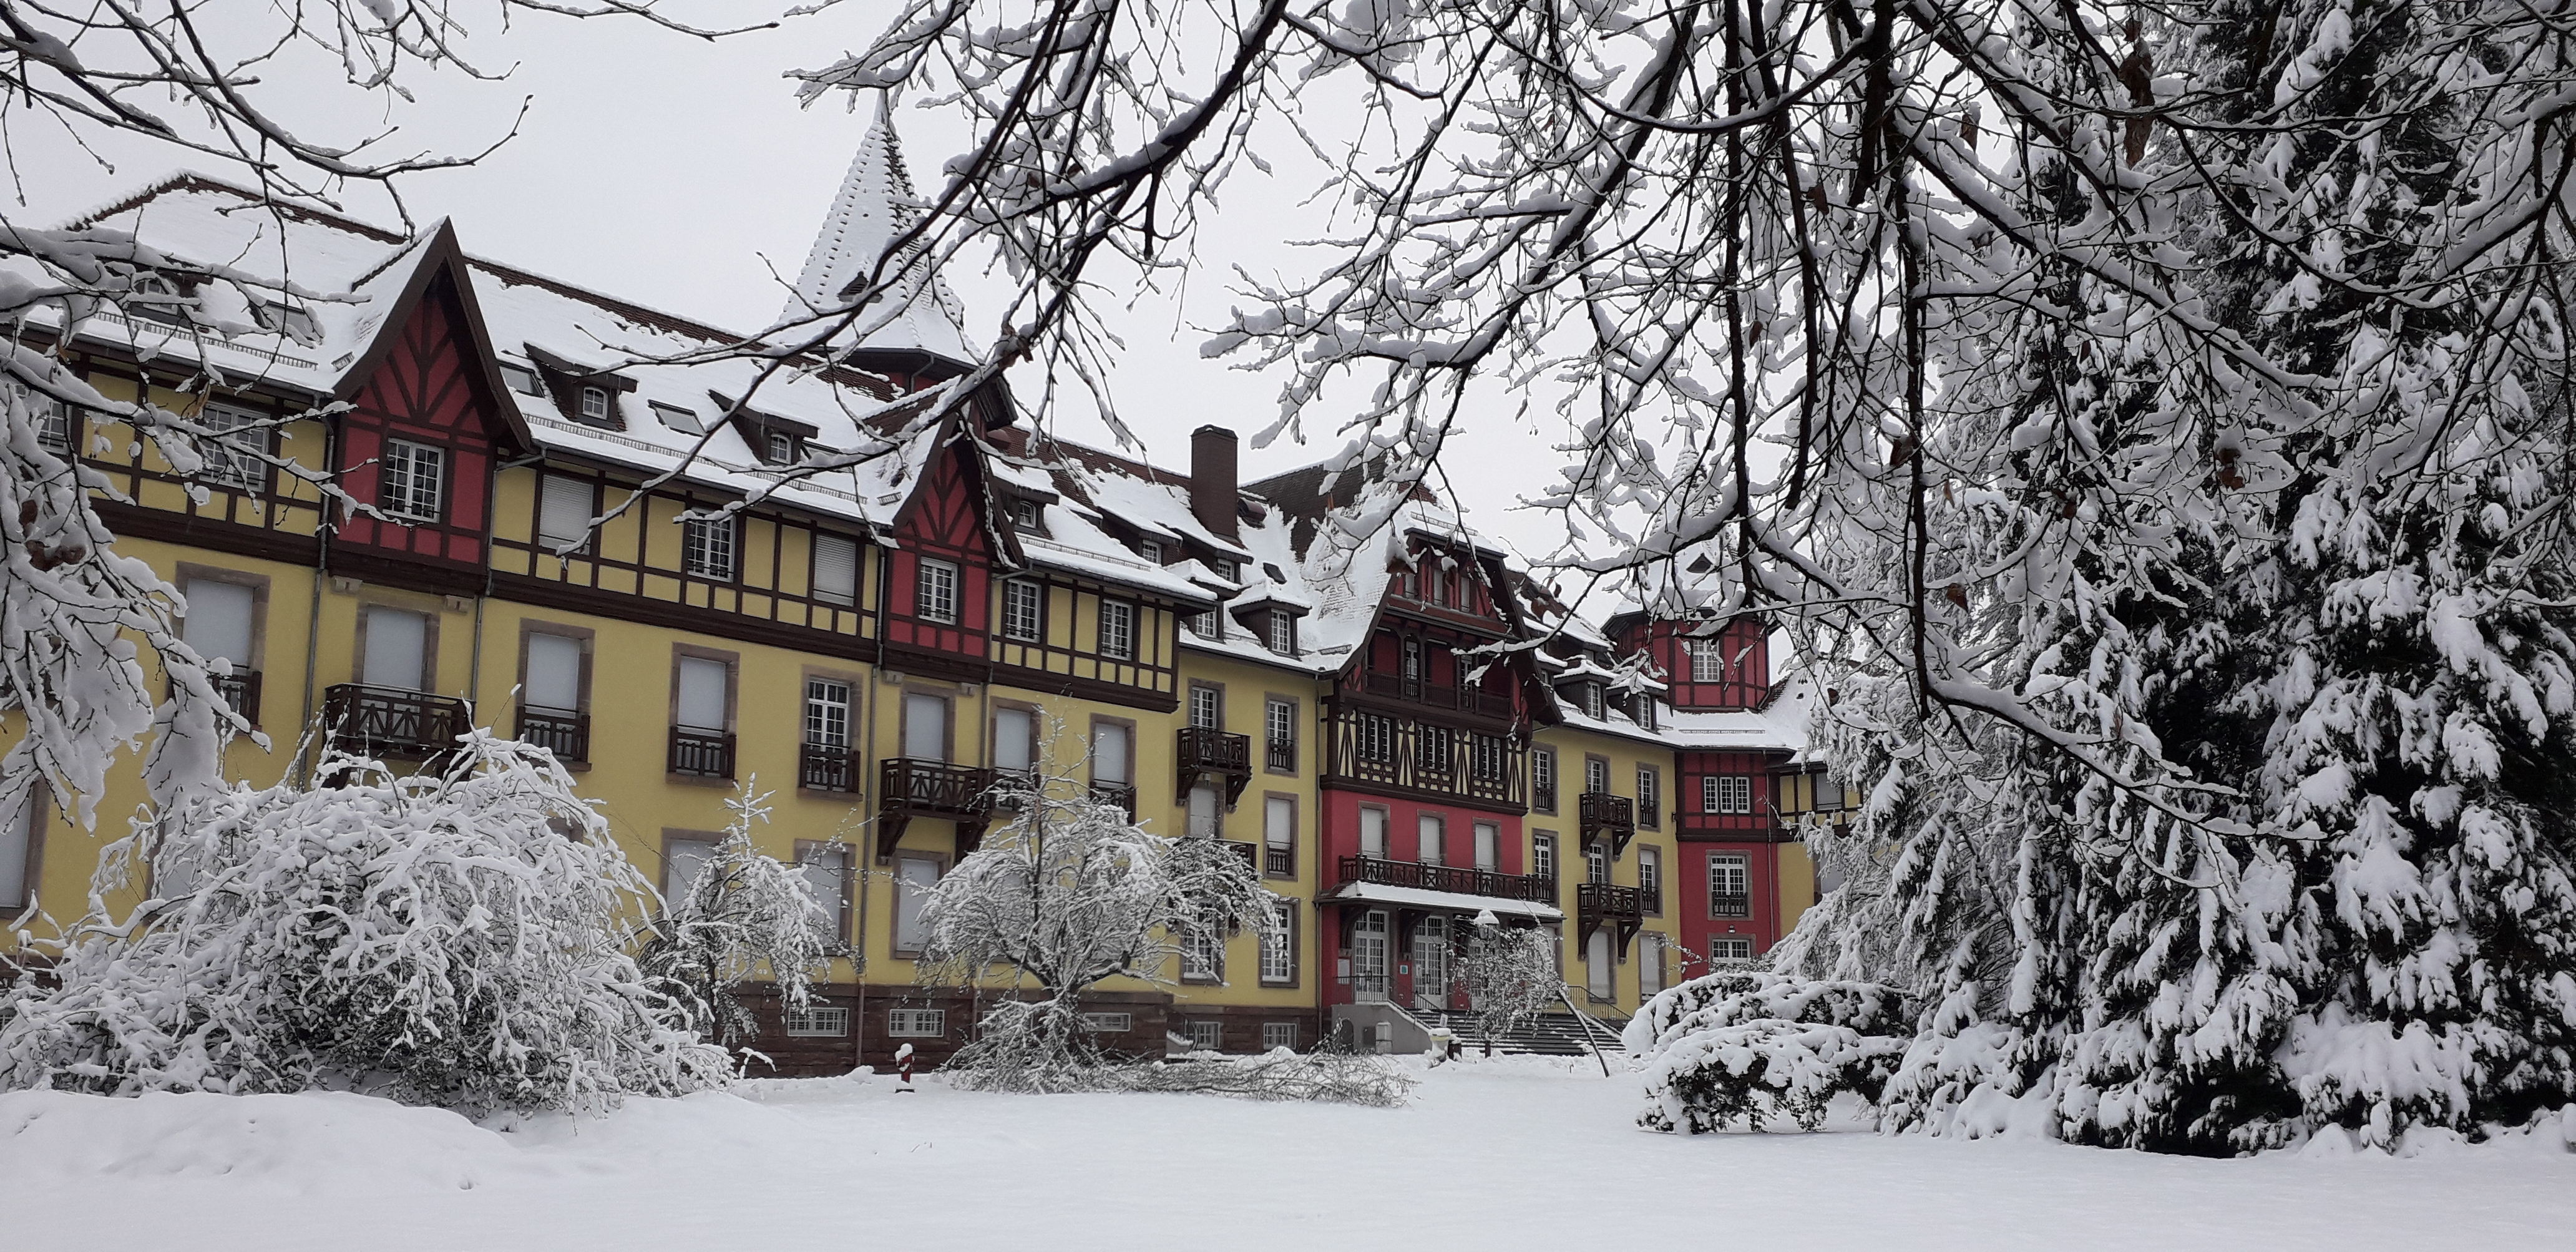 Sonnenberg sous la neige - Photo Vronique LIDIN